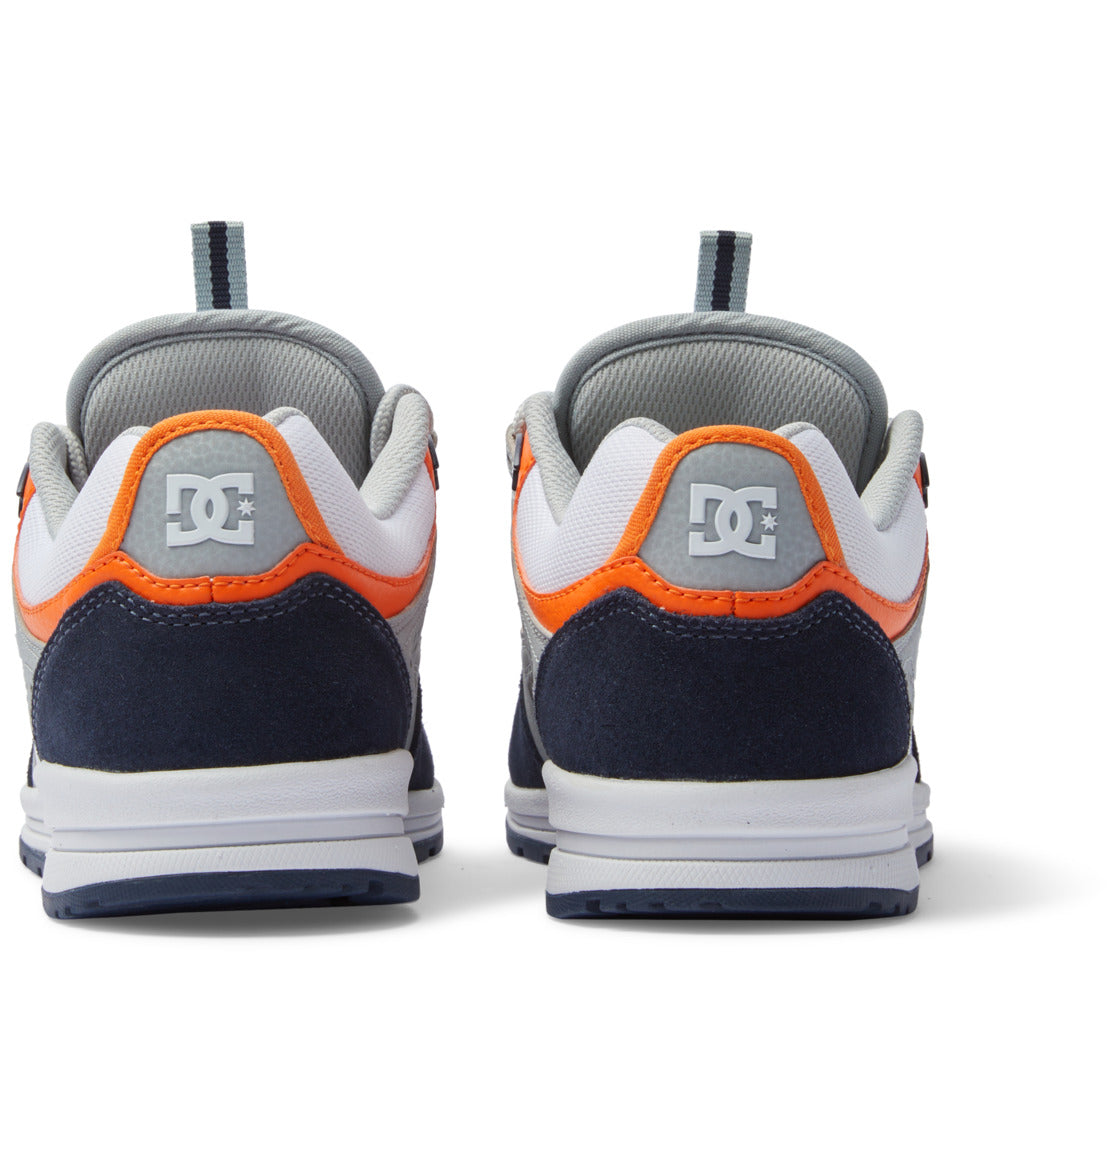 Chaussure de skate Dc Shoes Kalis Lite - Marine/Orange | Baskets | Chaussure | Collection_Zalando | Nouveaux produits | Produits les plus récents | Produits les plus vendus | surfdevils.com